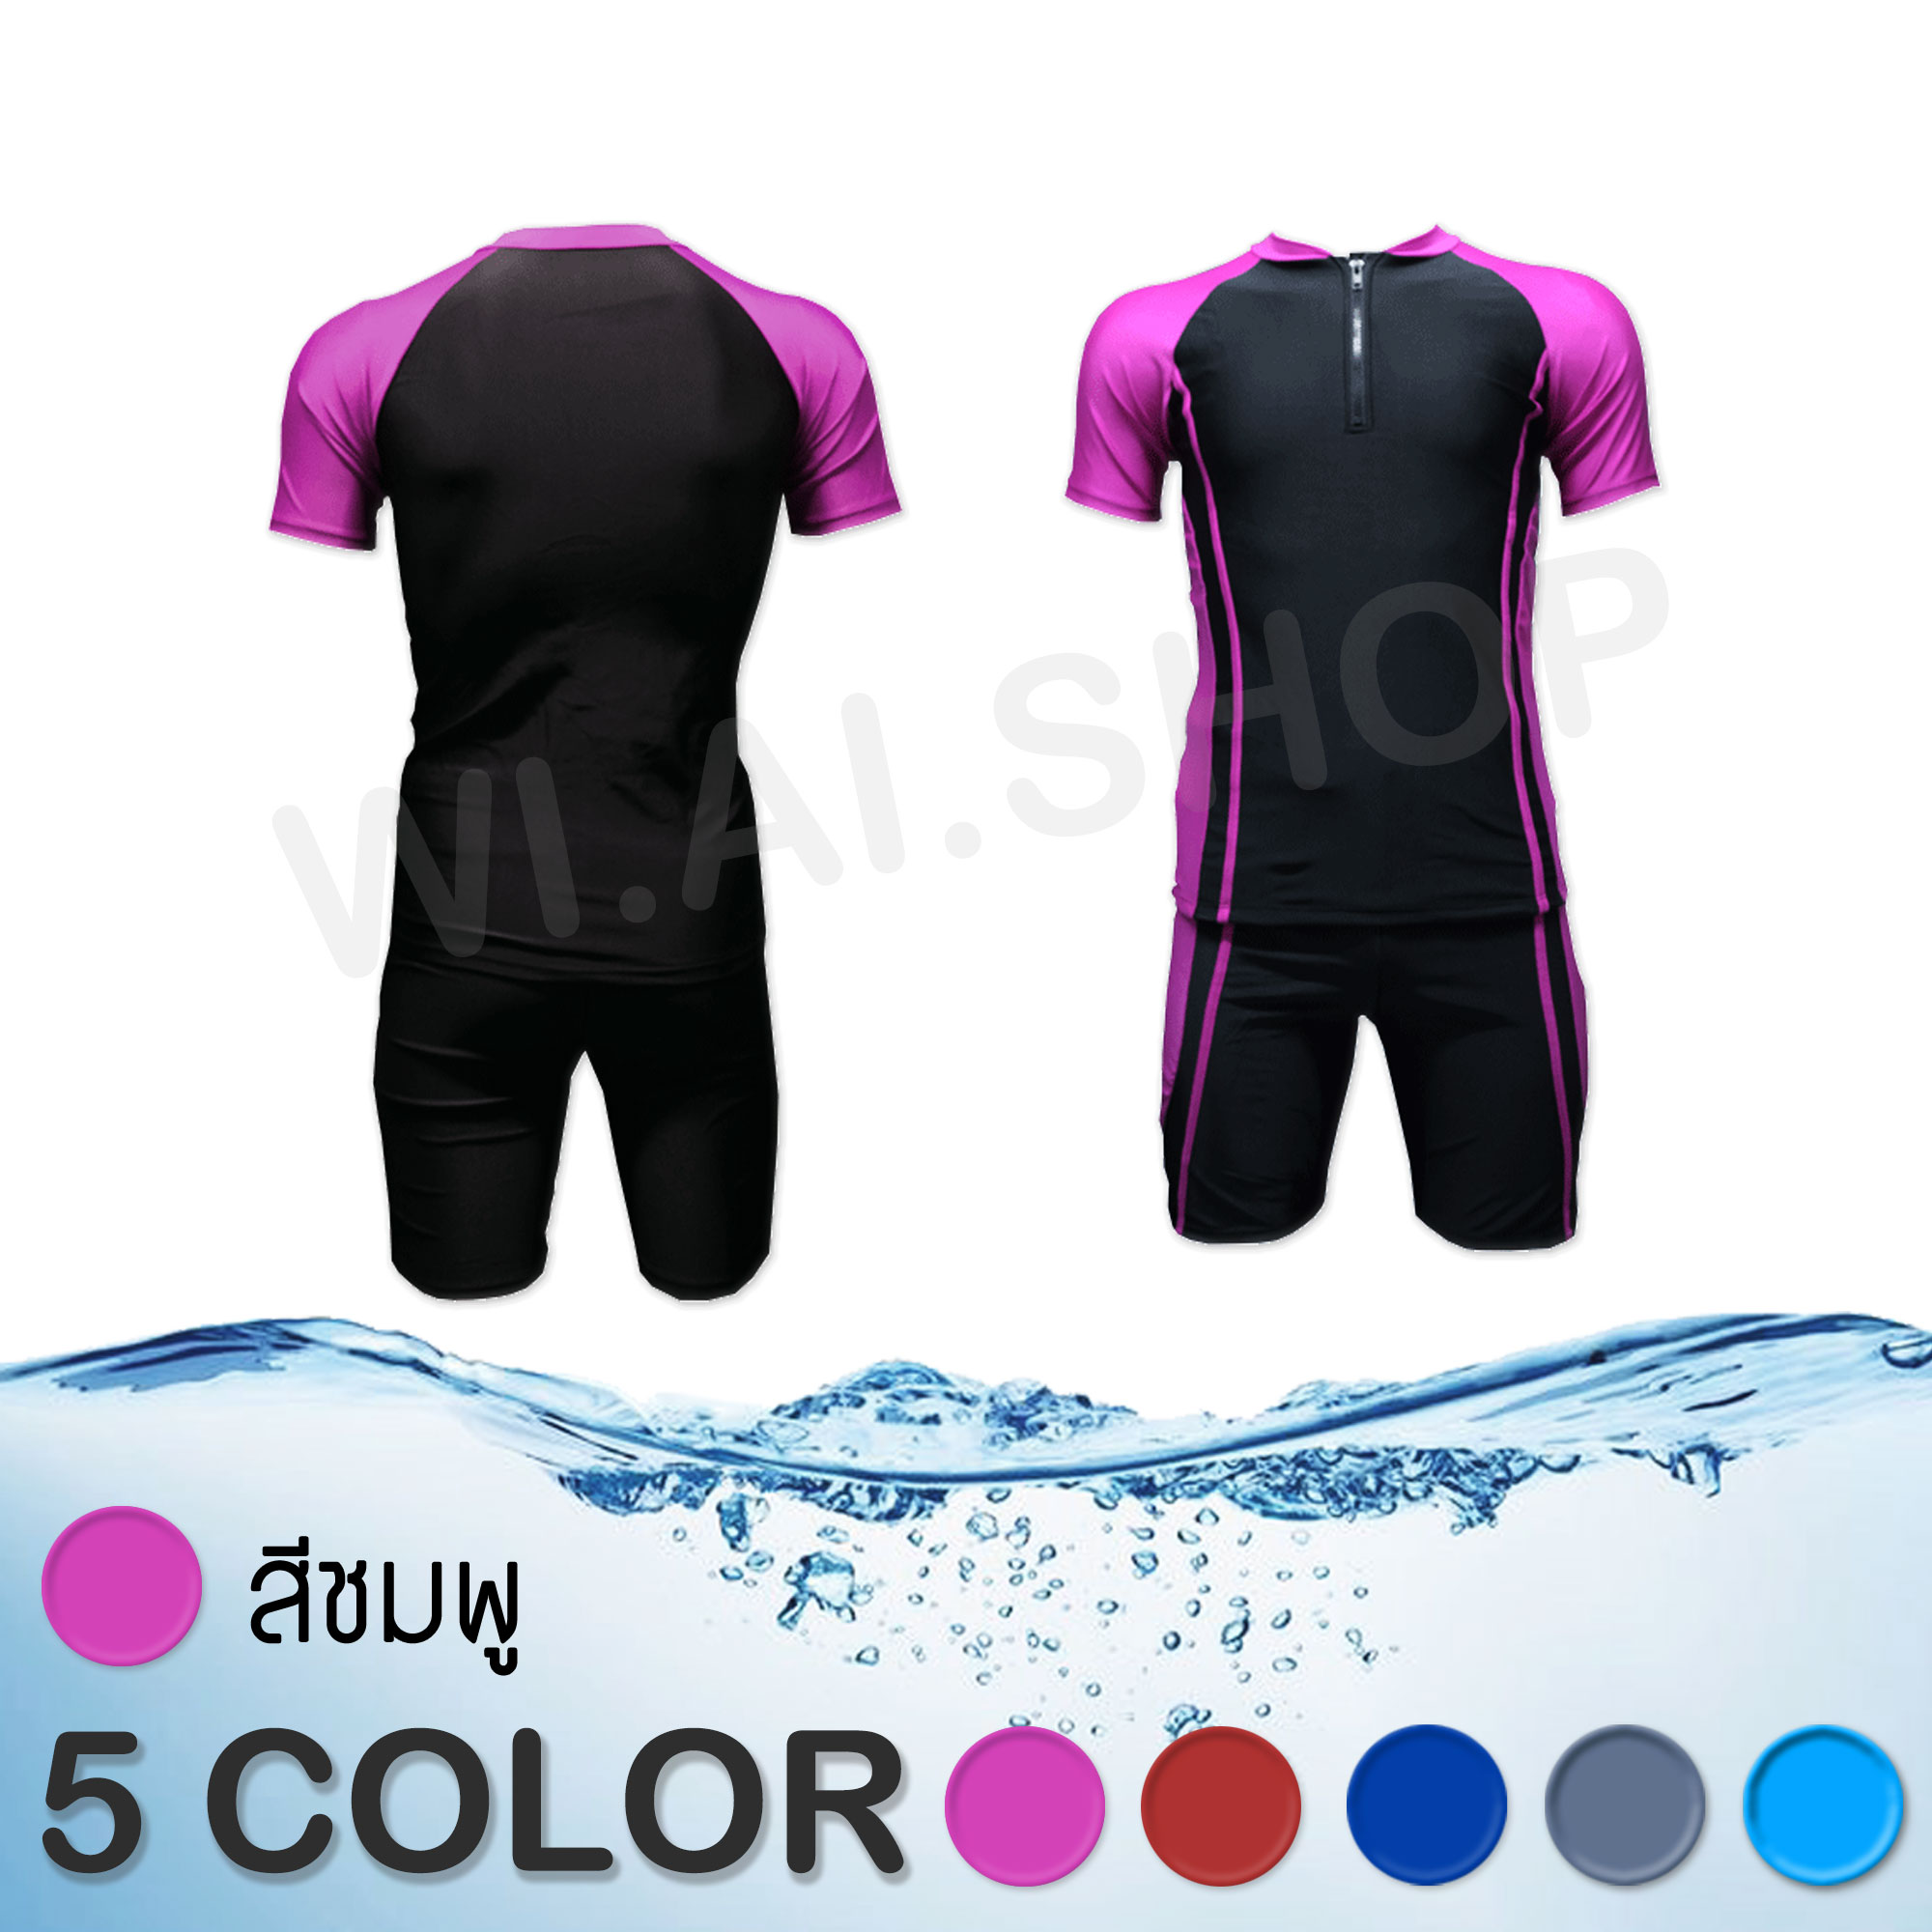 ชุดว่ายน้ำ ชุดว่ายน้ำแขนสั้น ขาสั้น ชุดว่ายน้ำหญิง ชาย ทอม สีดำ ซิปหน้า แยกชิ้น เสื้อ กางเกง สินค้าพร้อมส่งด่วน ขนาด S M L XL M041